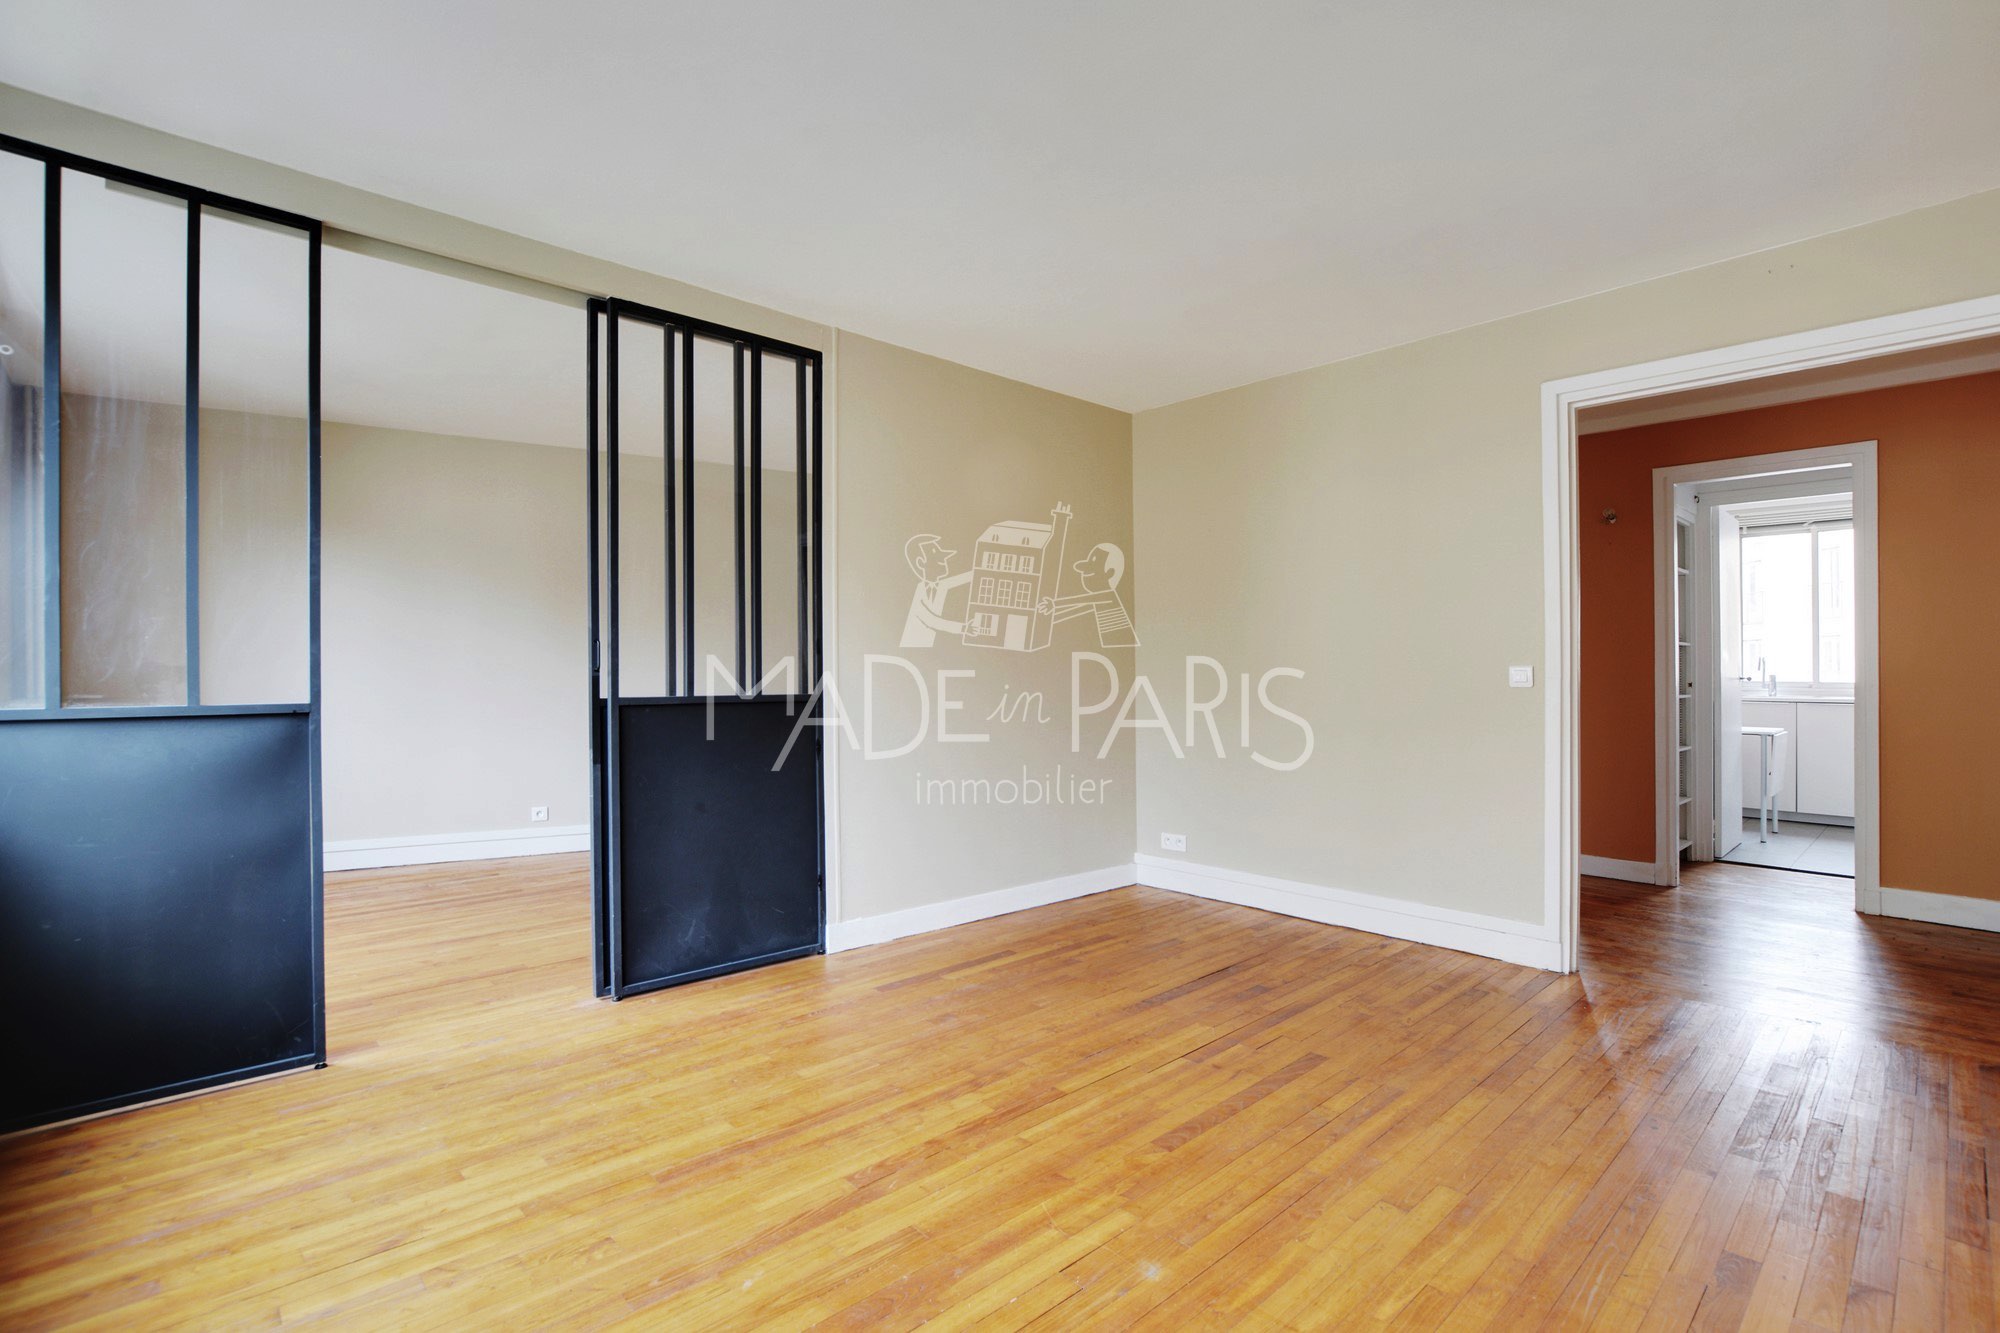 Made in Paris Immobilier Achat - Vente - appartement - 3Pièces - 2Chambres - Paris 13 - Butte aux Cailles